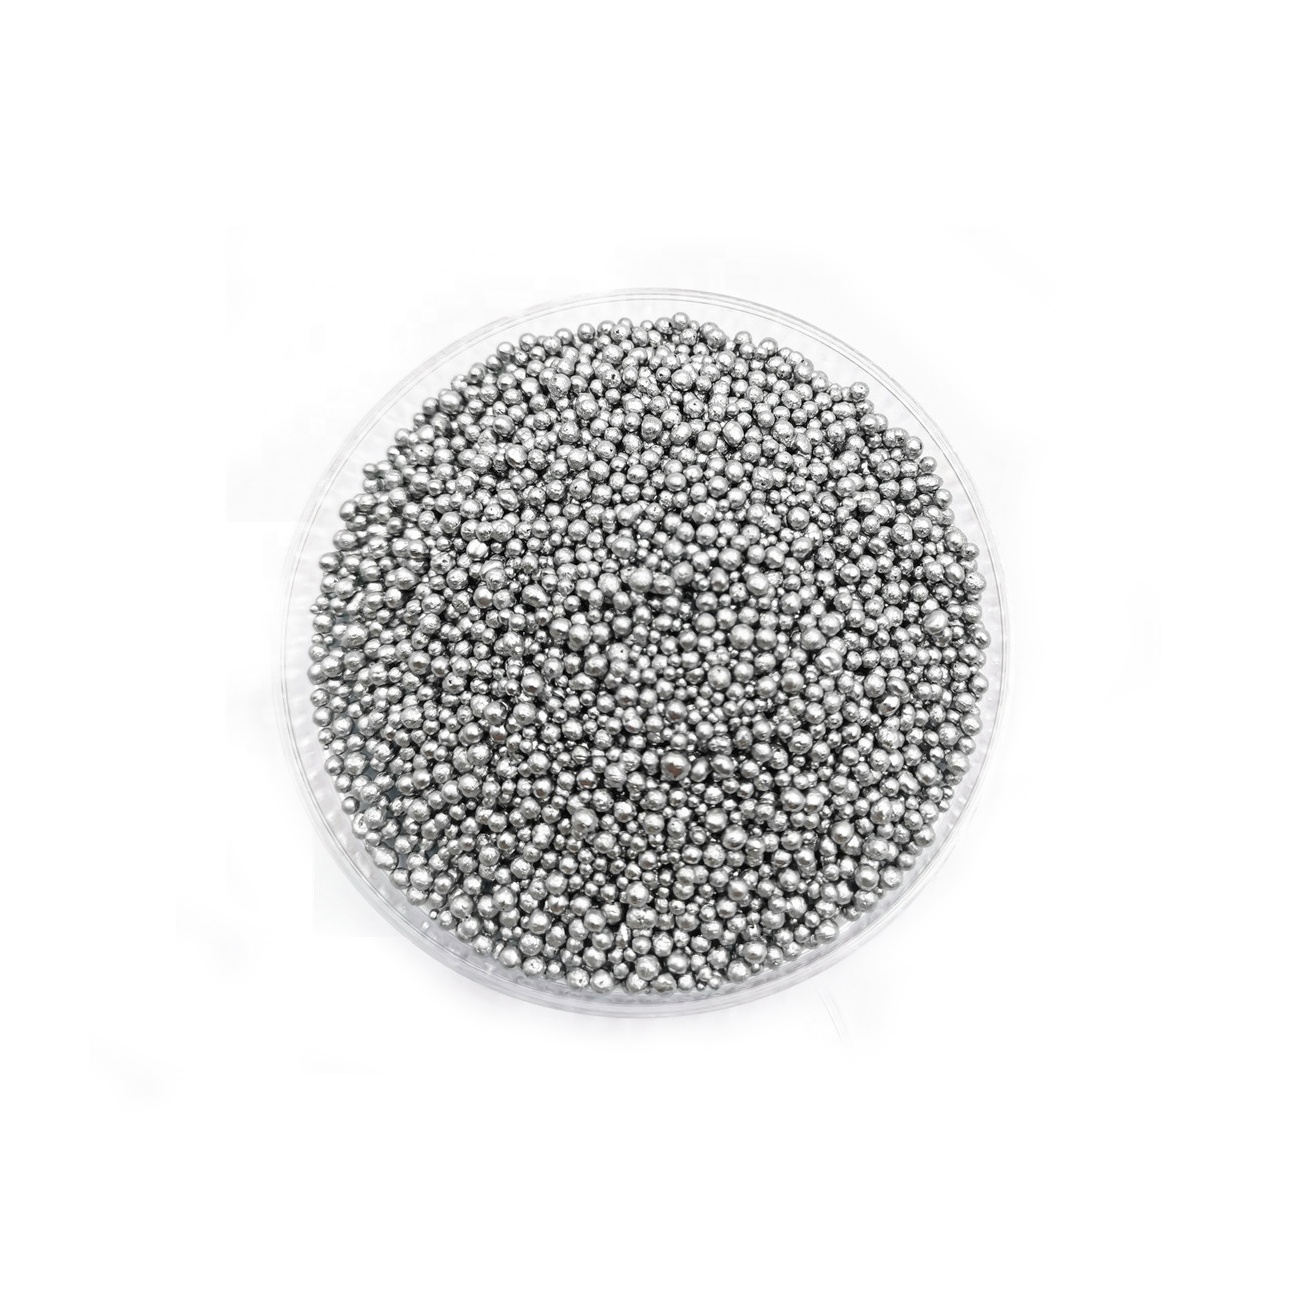 Fornitura di fabbrica Seleniu in polvere / Pellets / Beads / Se Granules cù u megliu prezzu